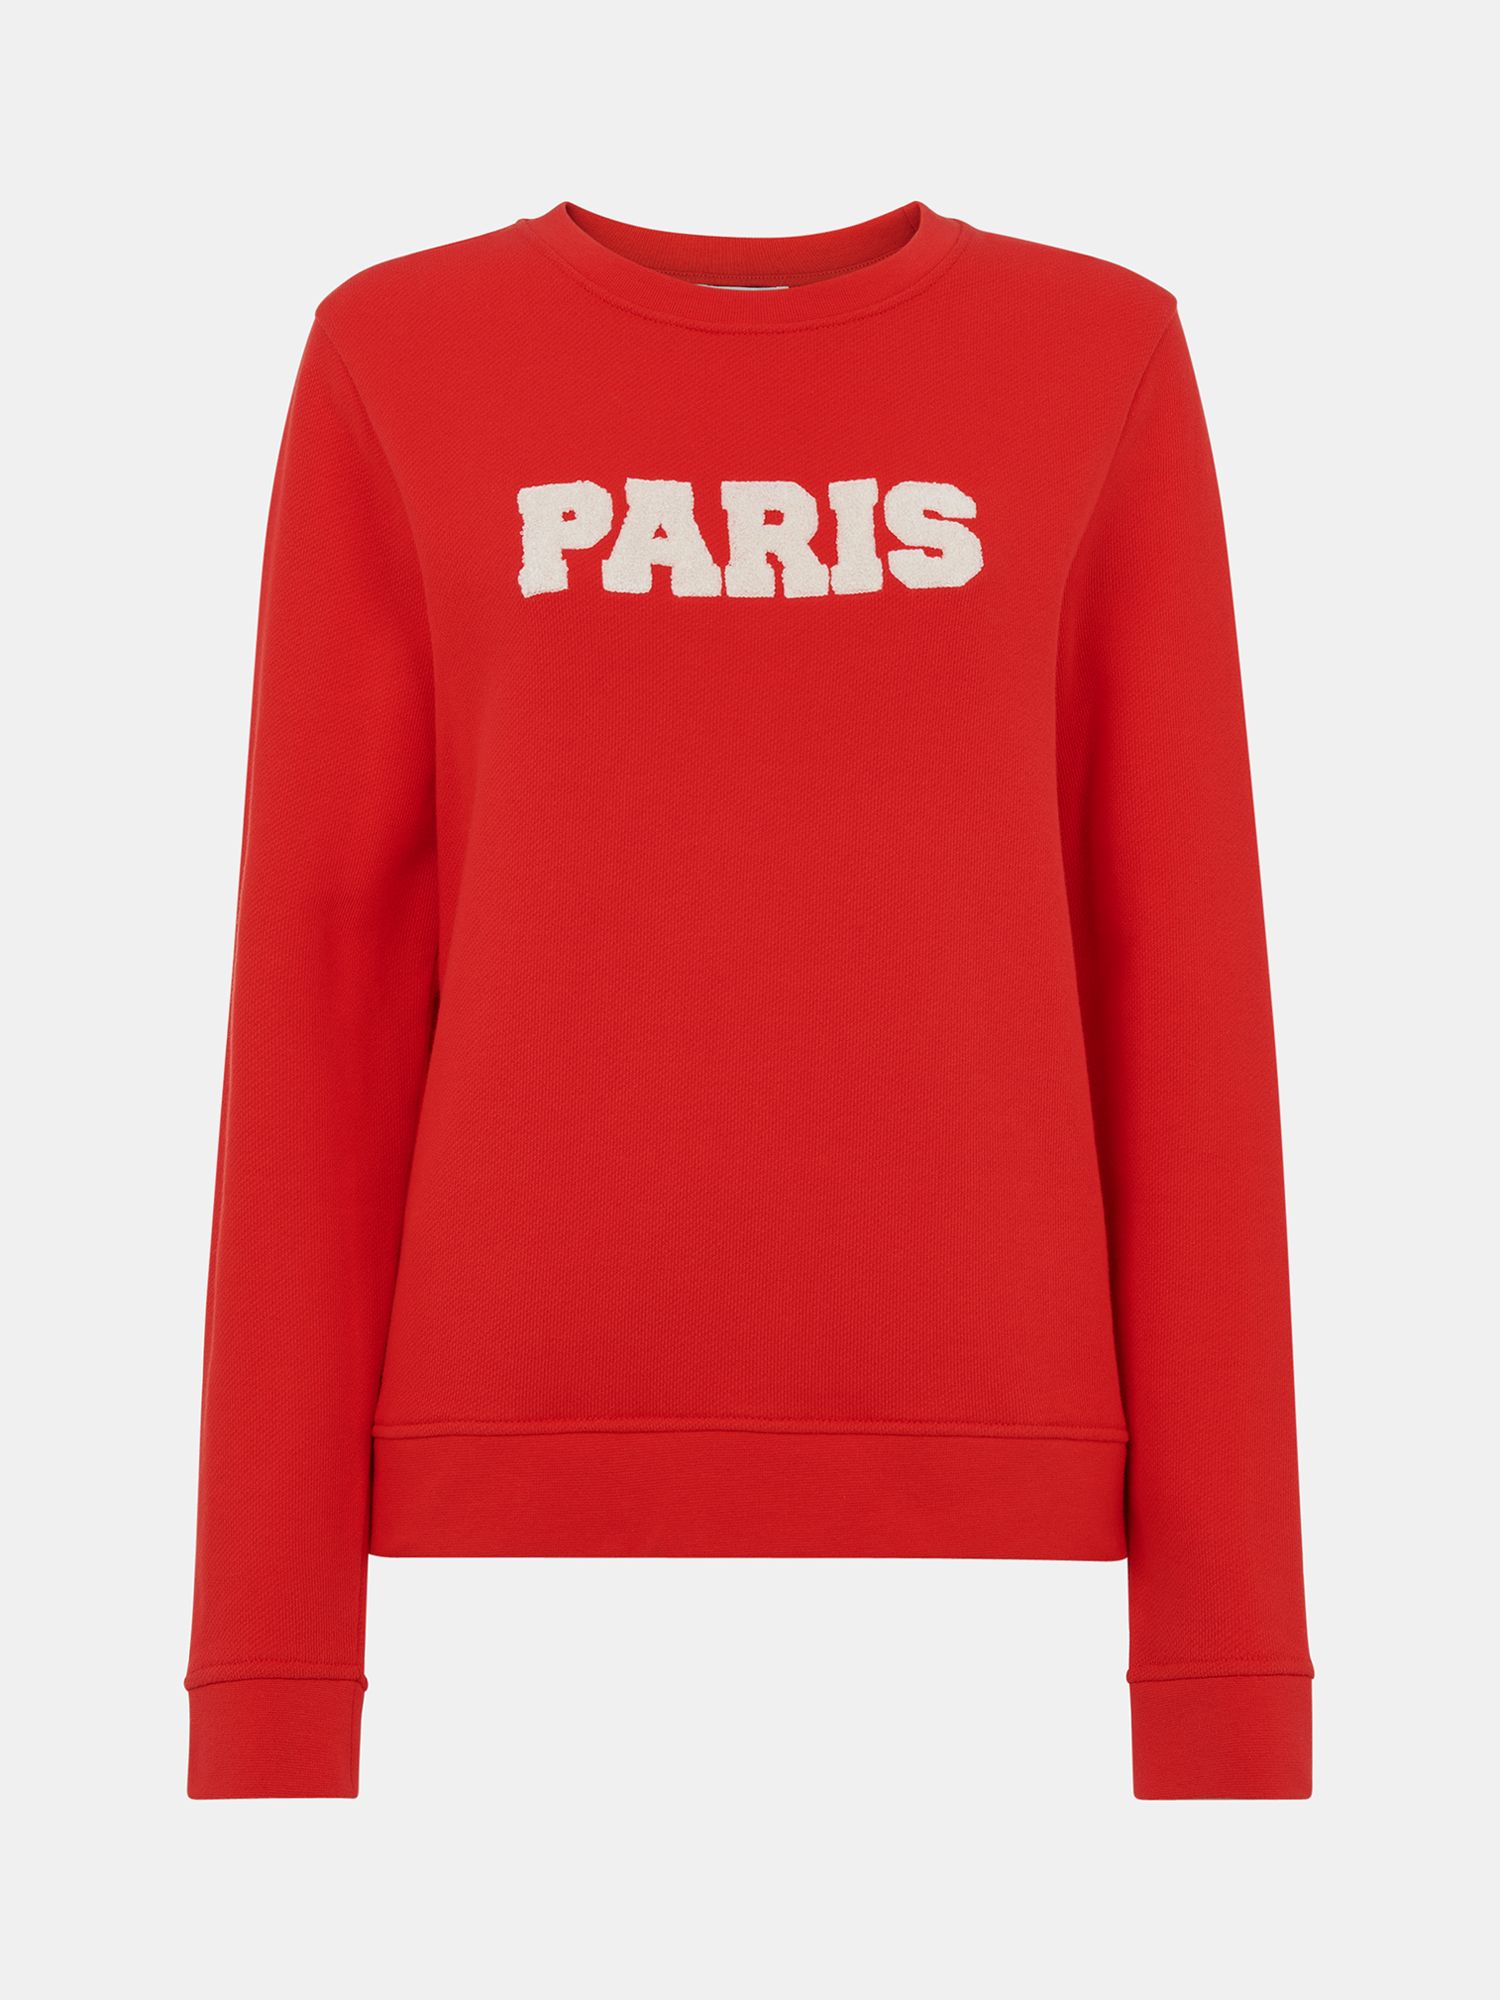 Whistles Paris Logo Sweatshirt, Red at John Lewis & Partners